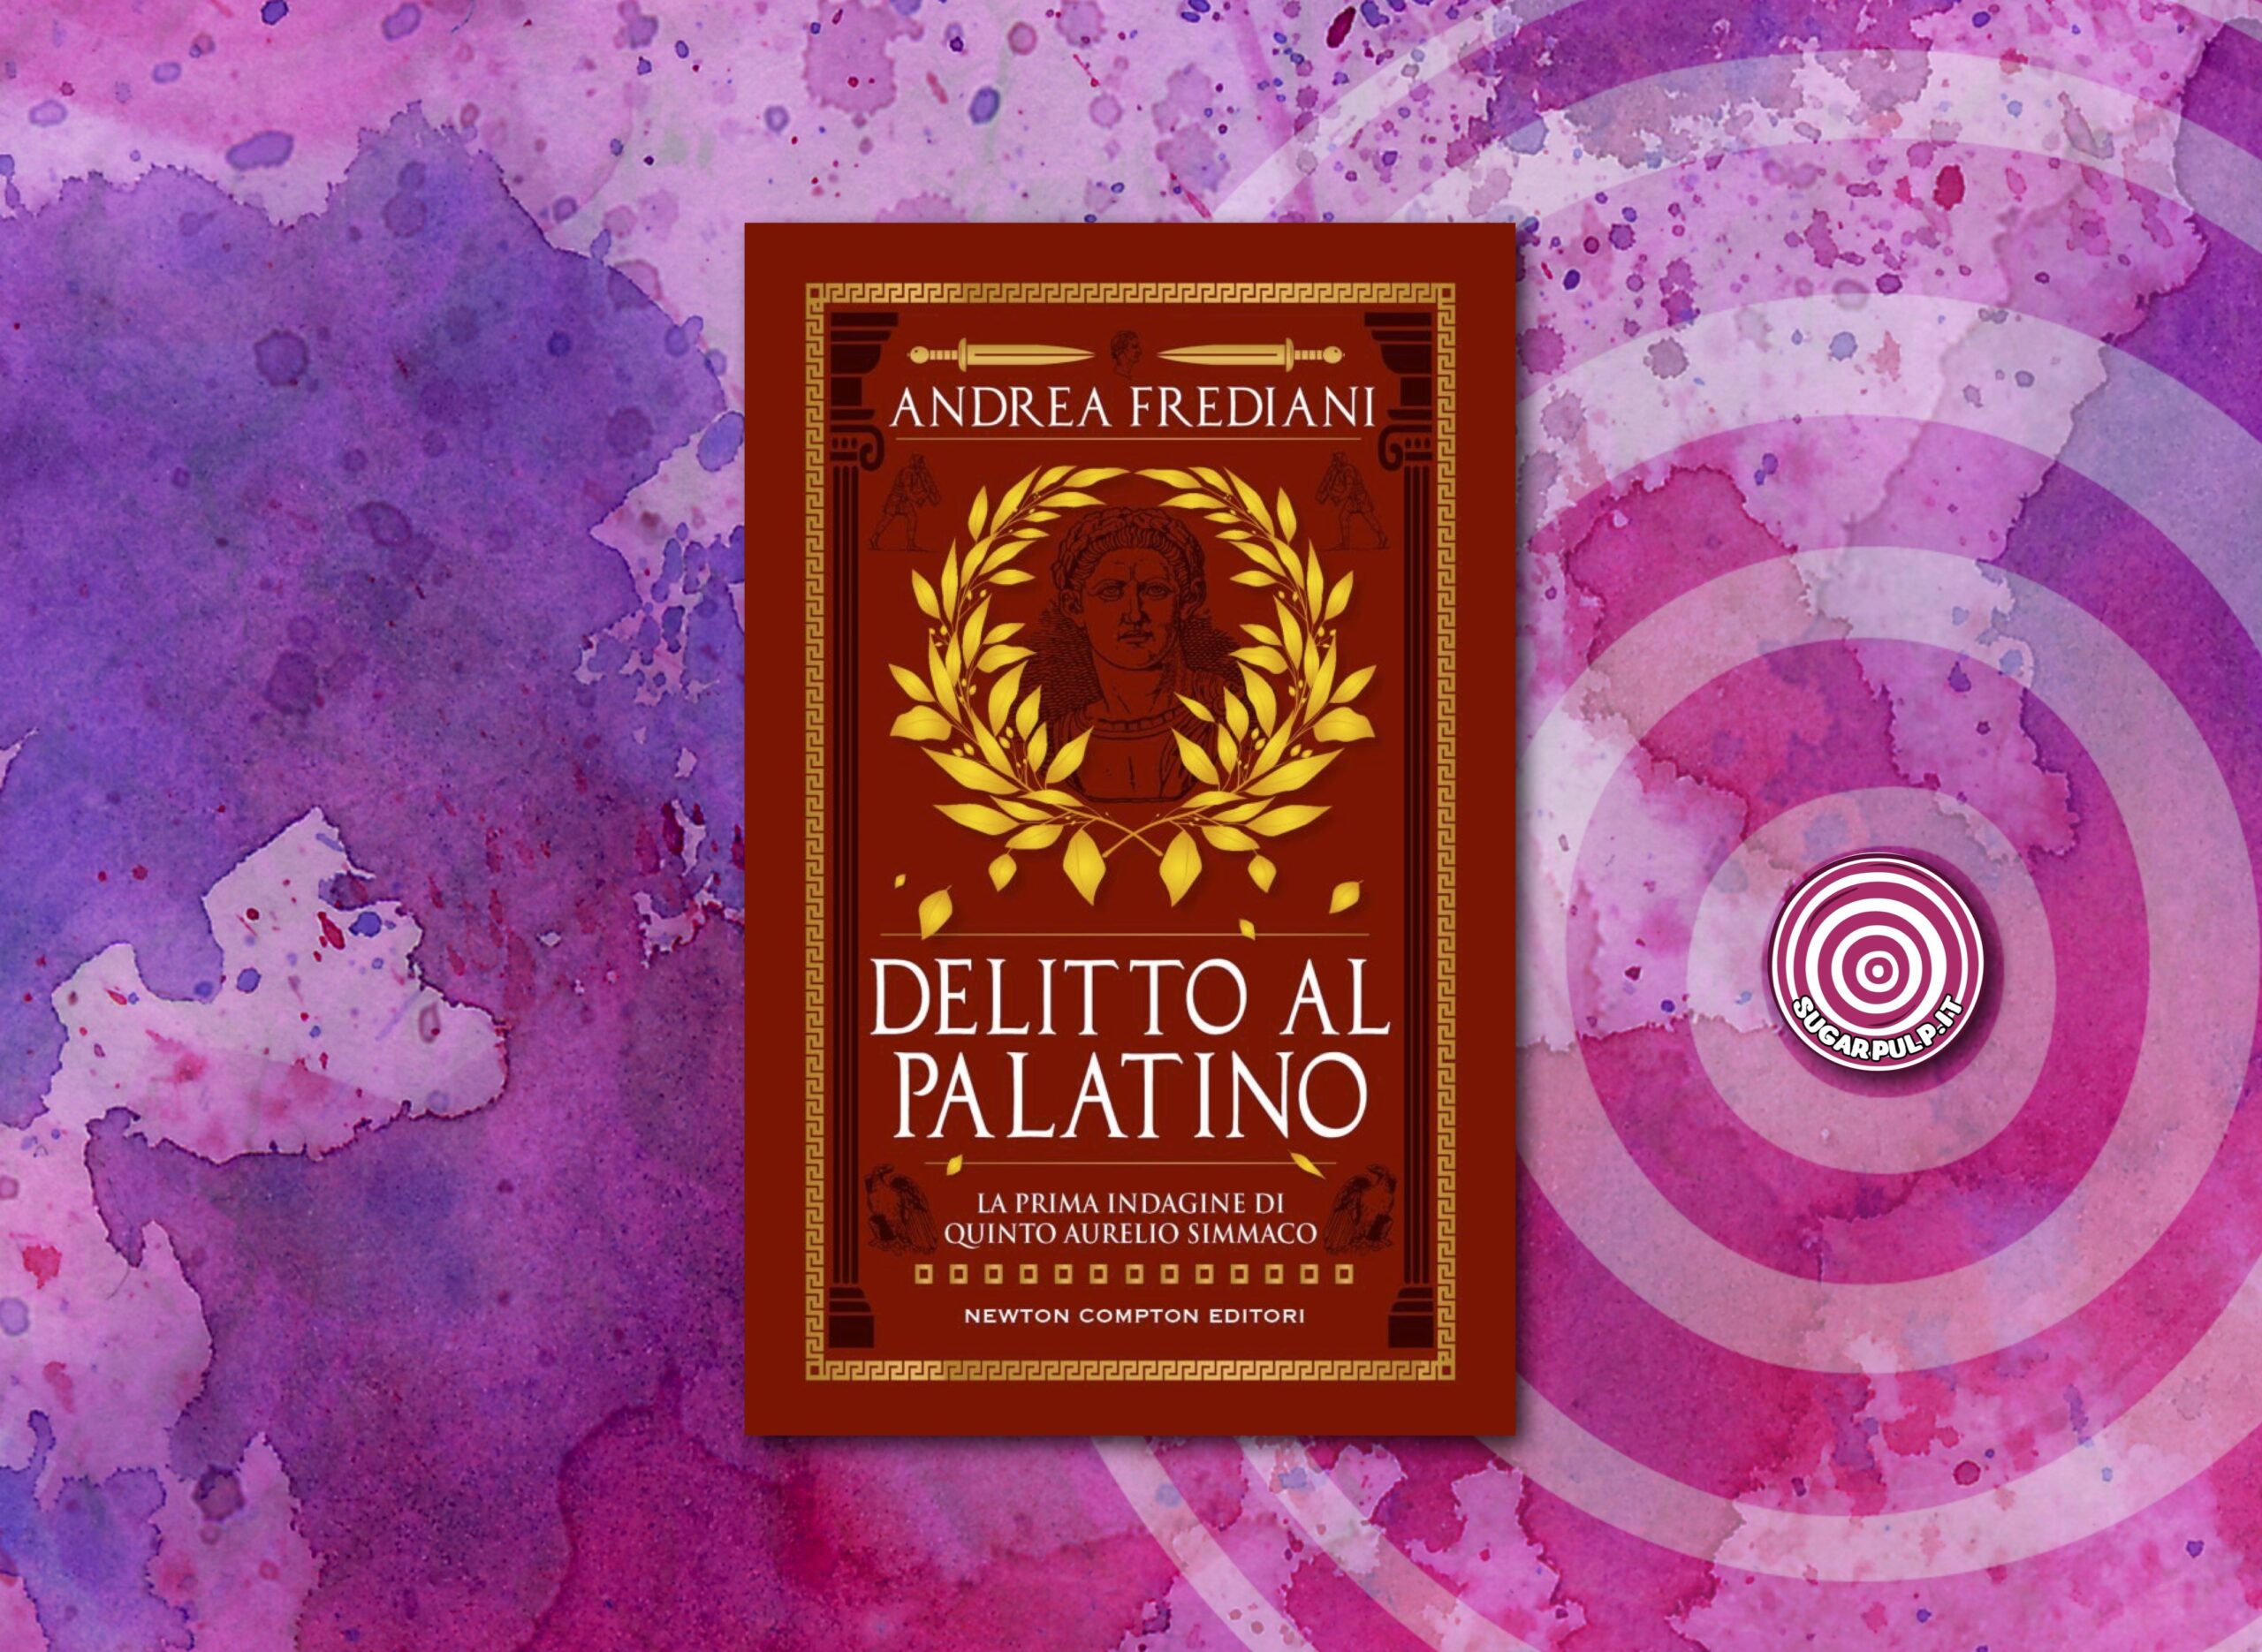 DELITTO AL PALATINO, la prima indagine di Quinto Aurelio Simmaco, il nuovo romanzo di Andrea Frediani in uscita per Newton Compton Editori.